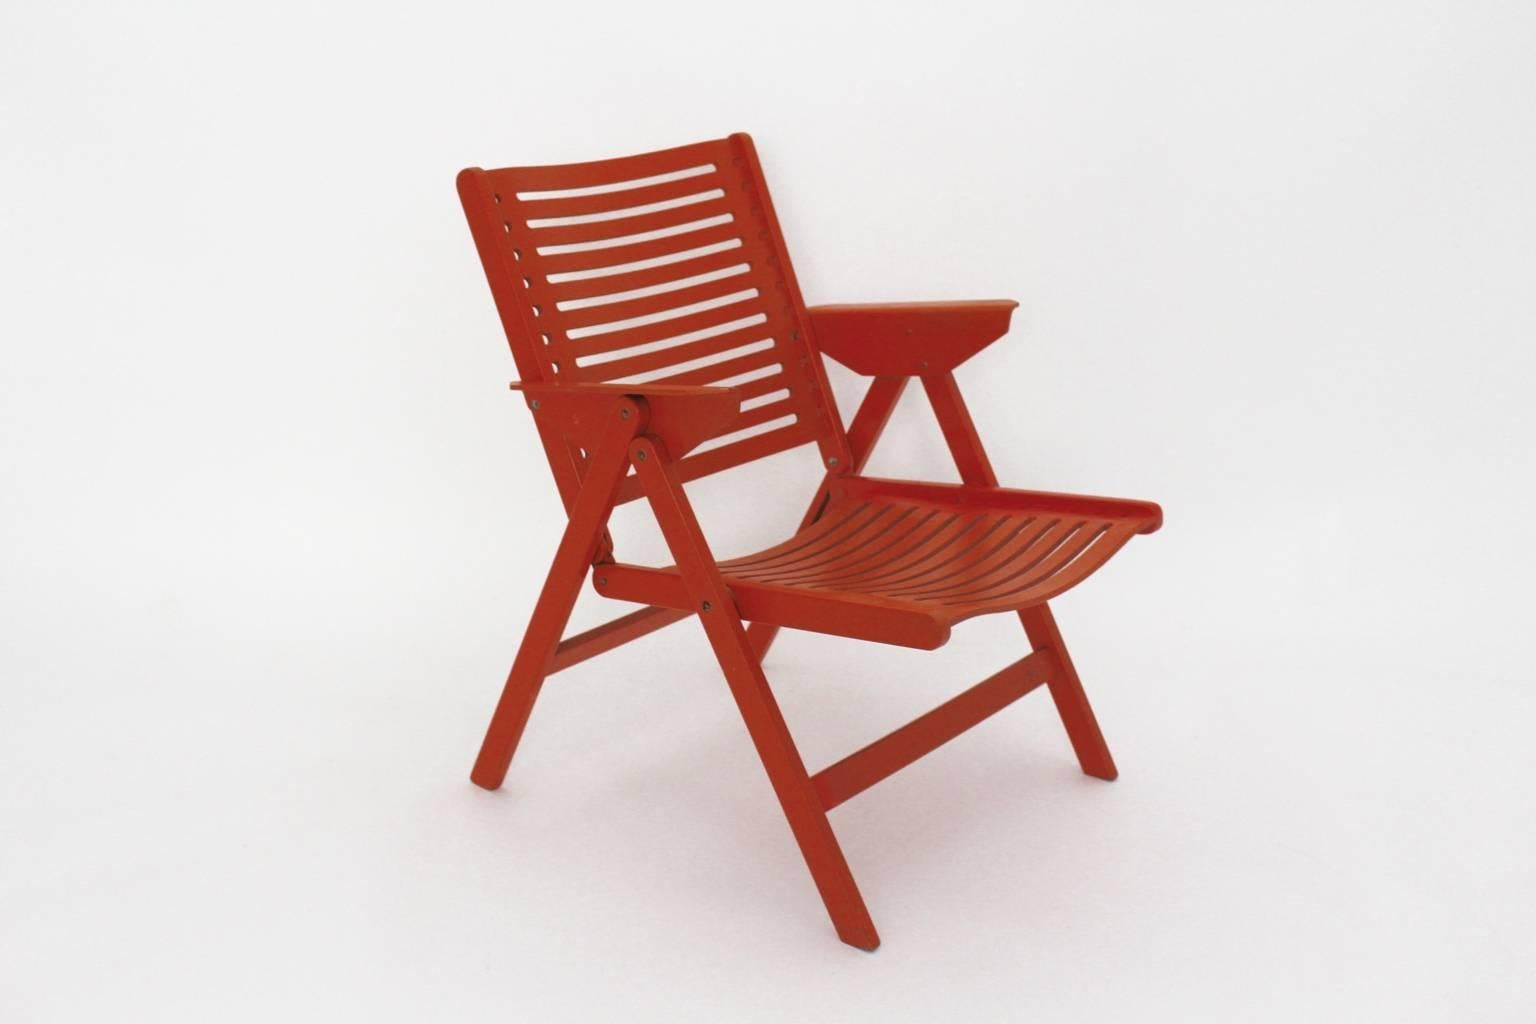 Mid century Modern vintage klappbarer Sessel aus orange lackiertem Sperrholz und Buchenholz. Der Sessel ist in sehr gutem Originalzustand  ausgeführt in den 1950er Jahren.
Alle Maße sind Näherungswerte.
